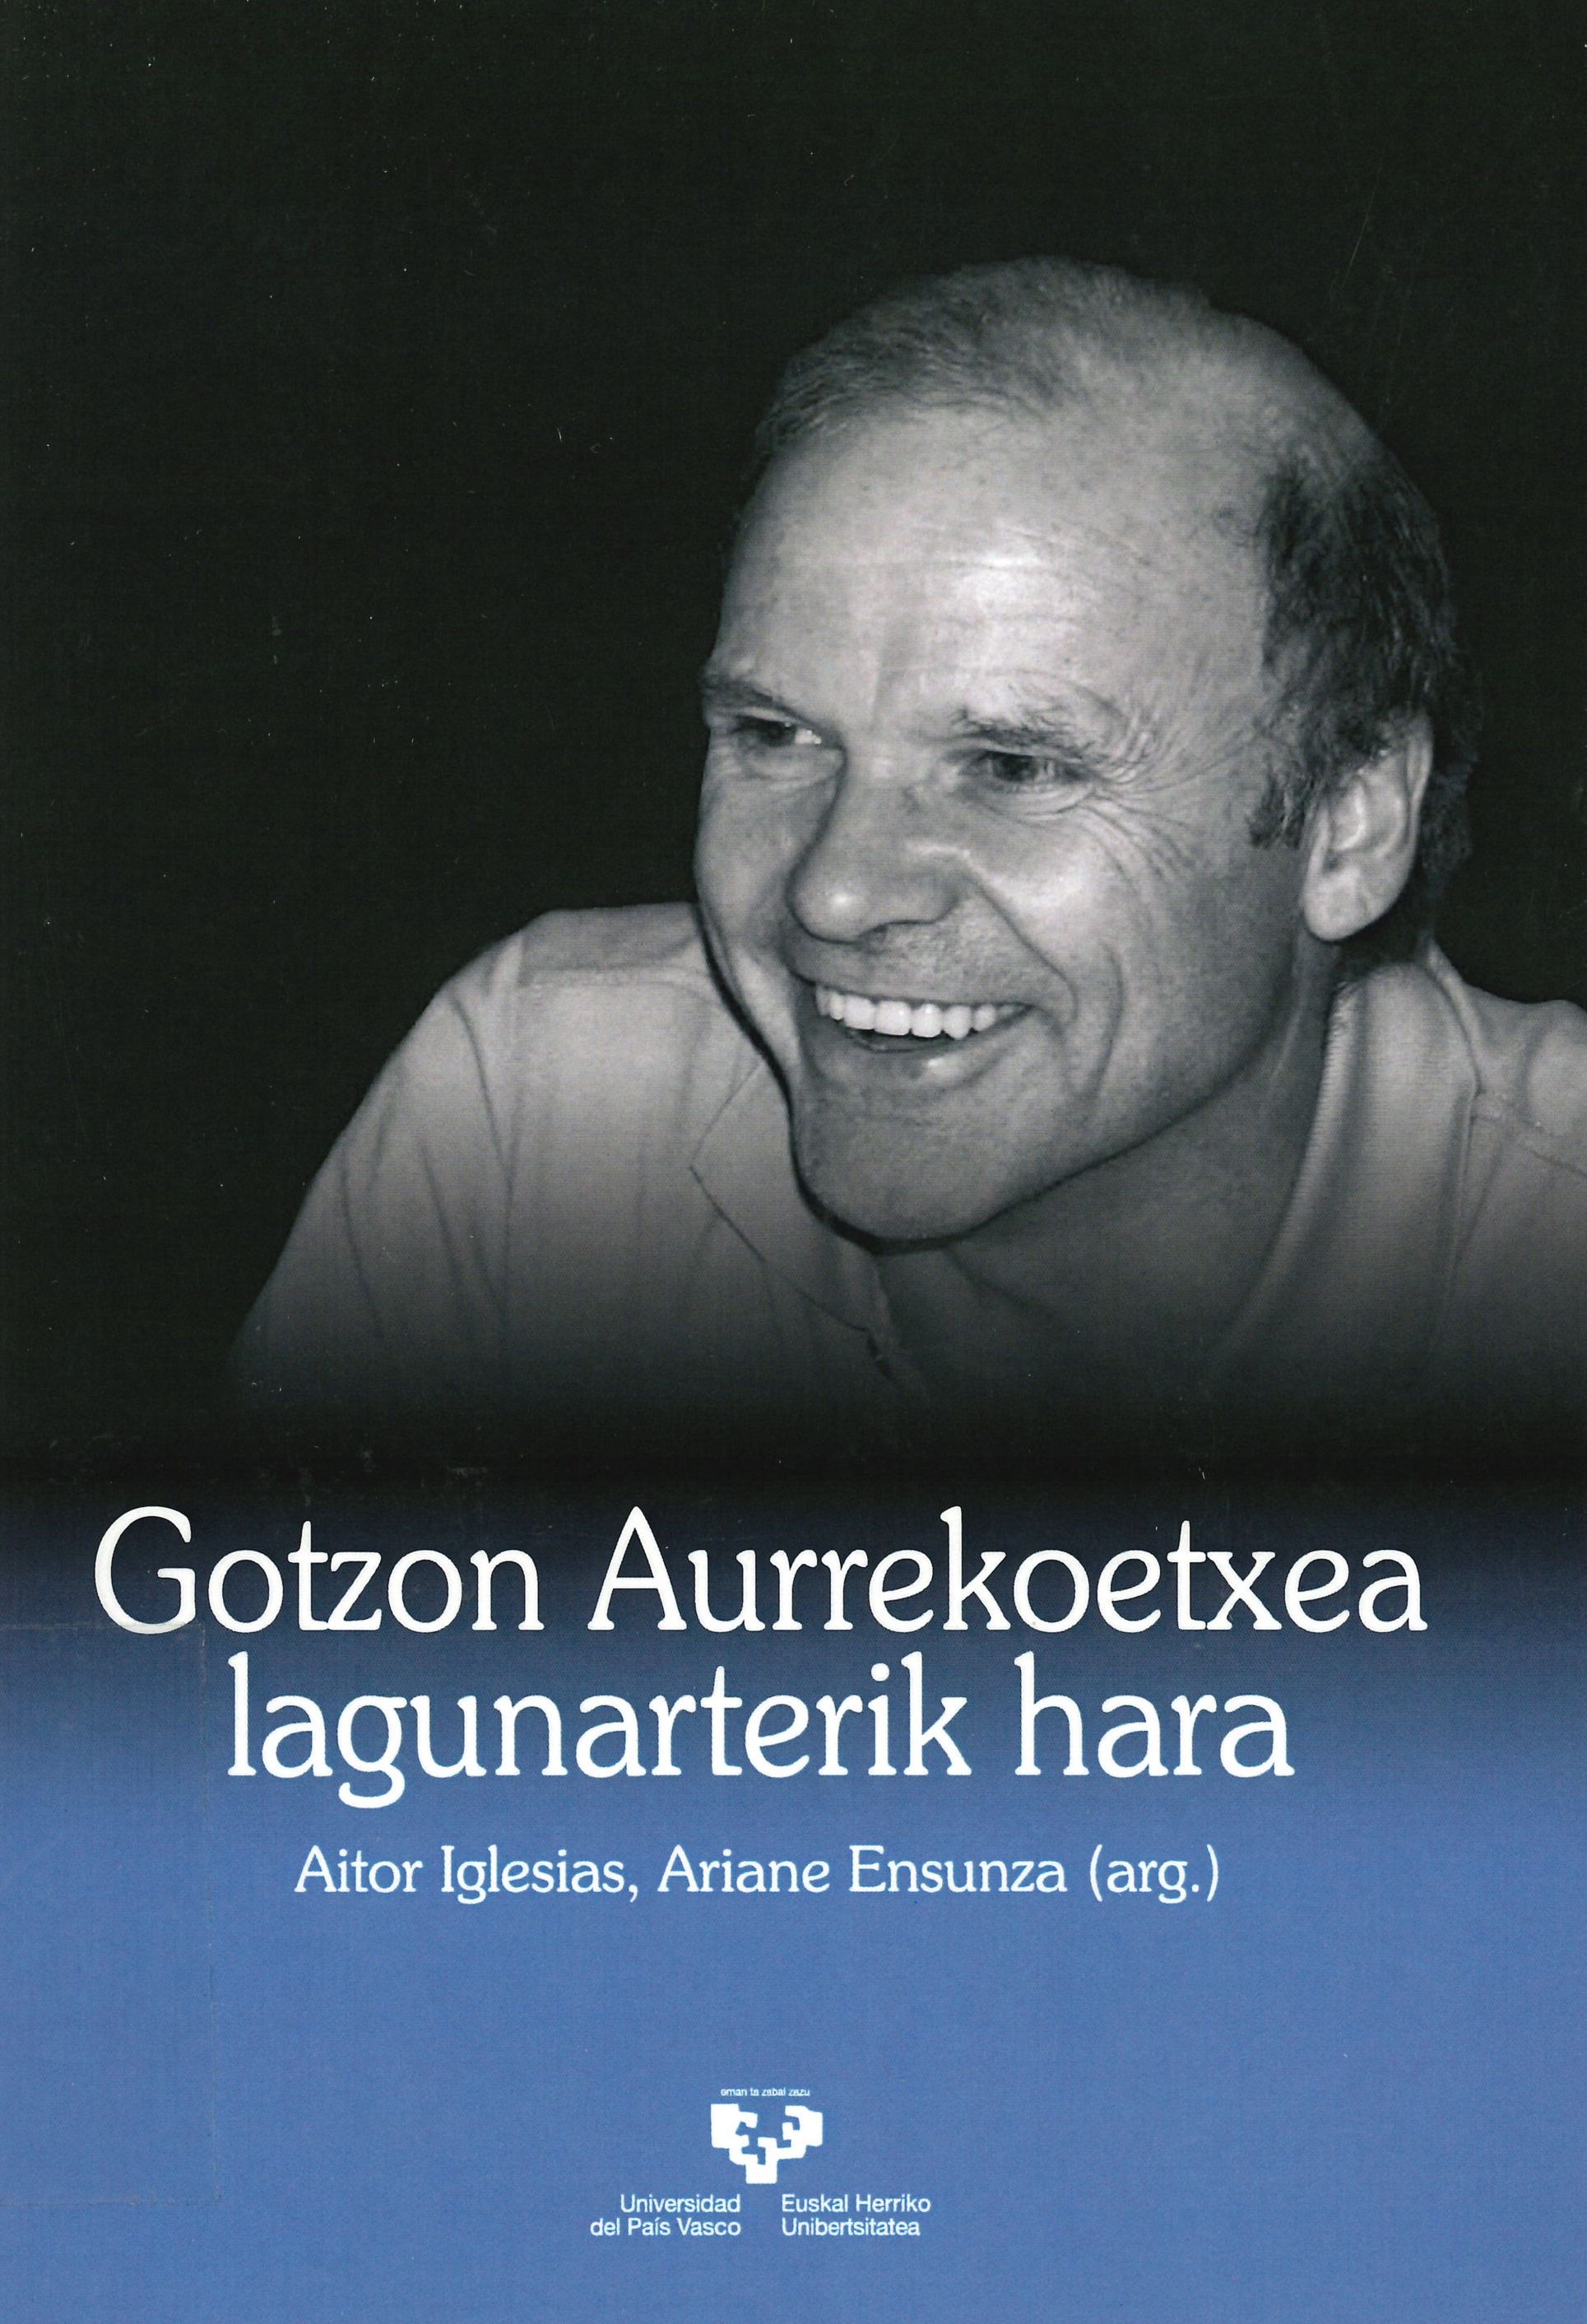 Imagen de portada del libro Gotzon Aurrekoetxea lagunarterik hara